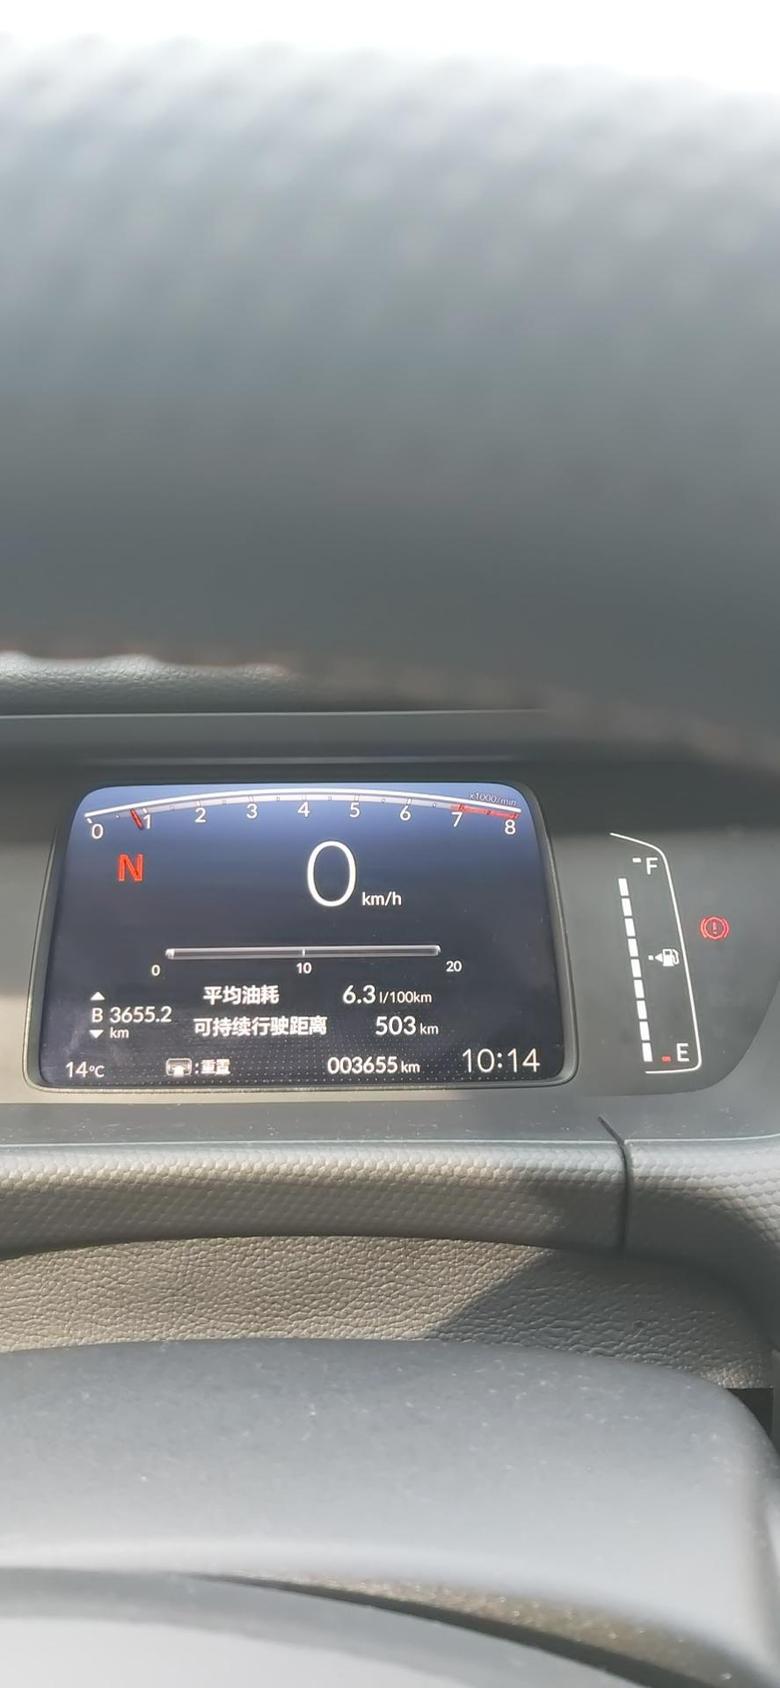 位置河北沧州飞度潮享版目前6.3，可行驶503今天上班第一天，市区限号改了，这是多么痛的领悟。早上出门还是比较冷的的，先热下车，温度上来打开暖风，还是比较好的。